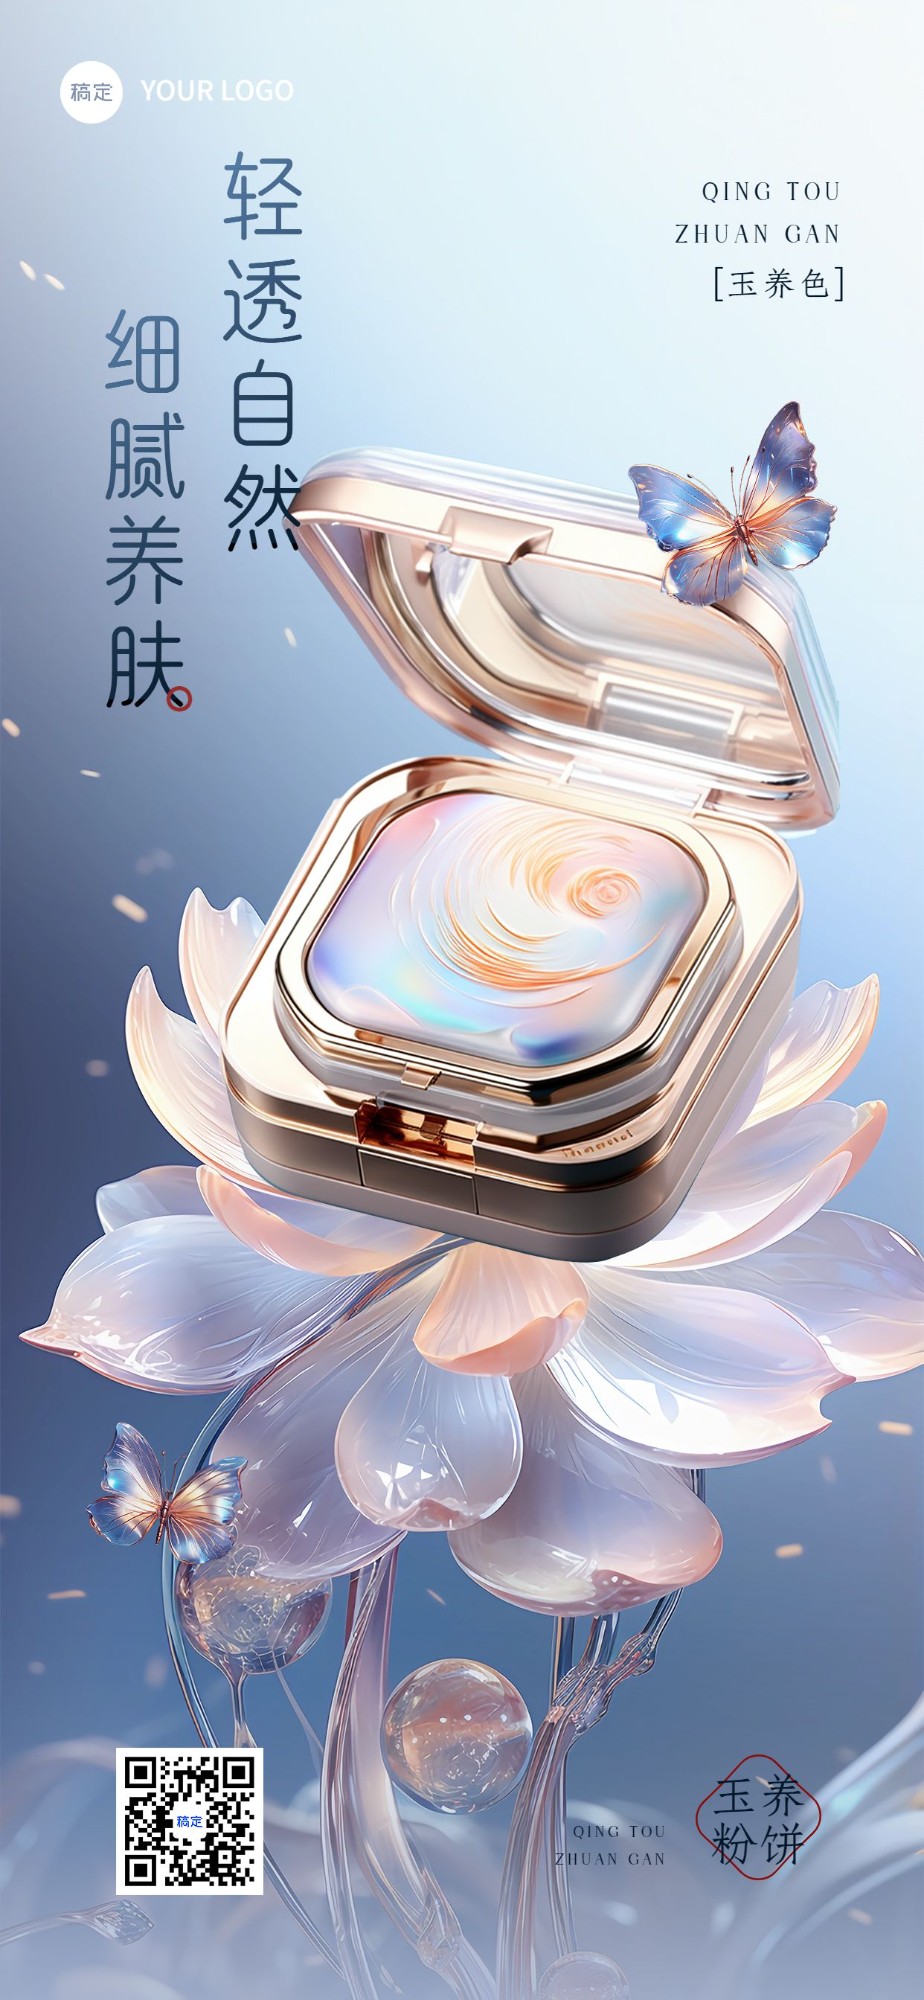 美容美妆产品营销现代中国风实景合成全屏竖版海报